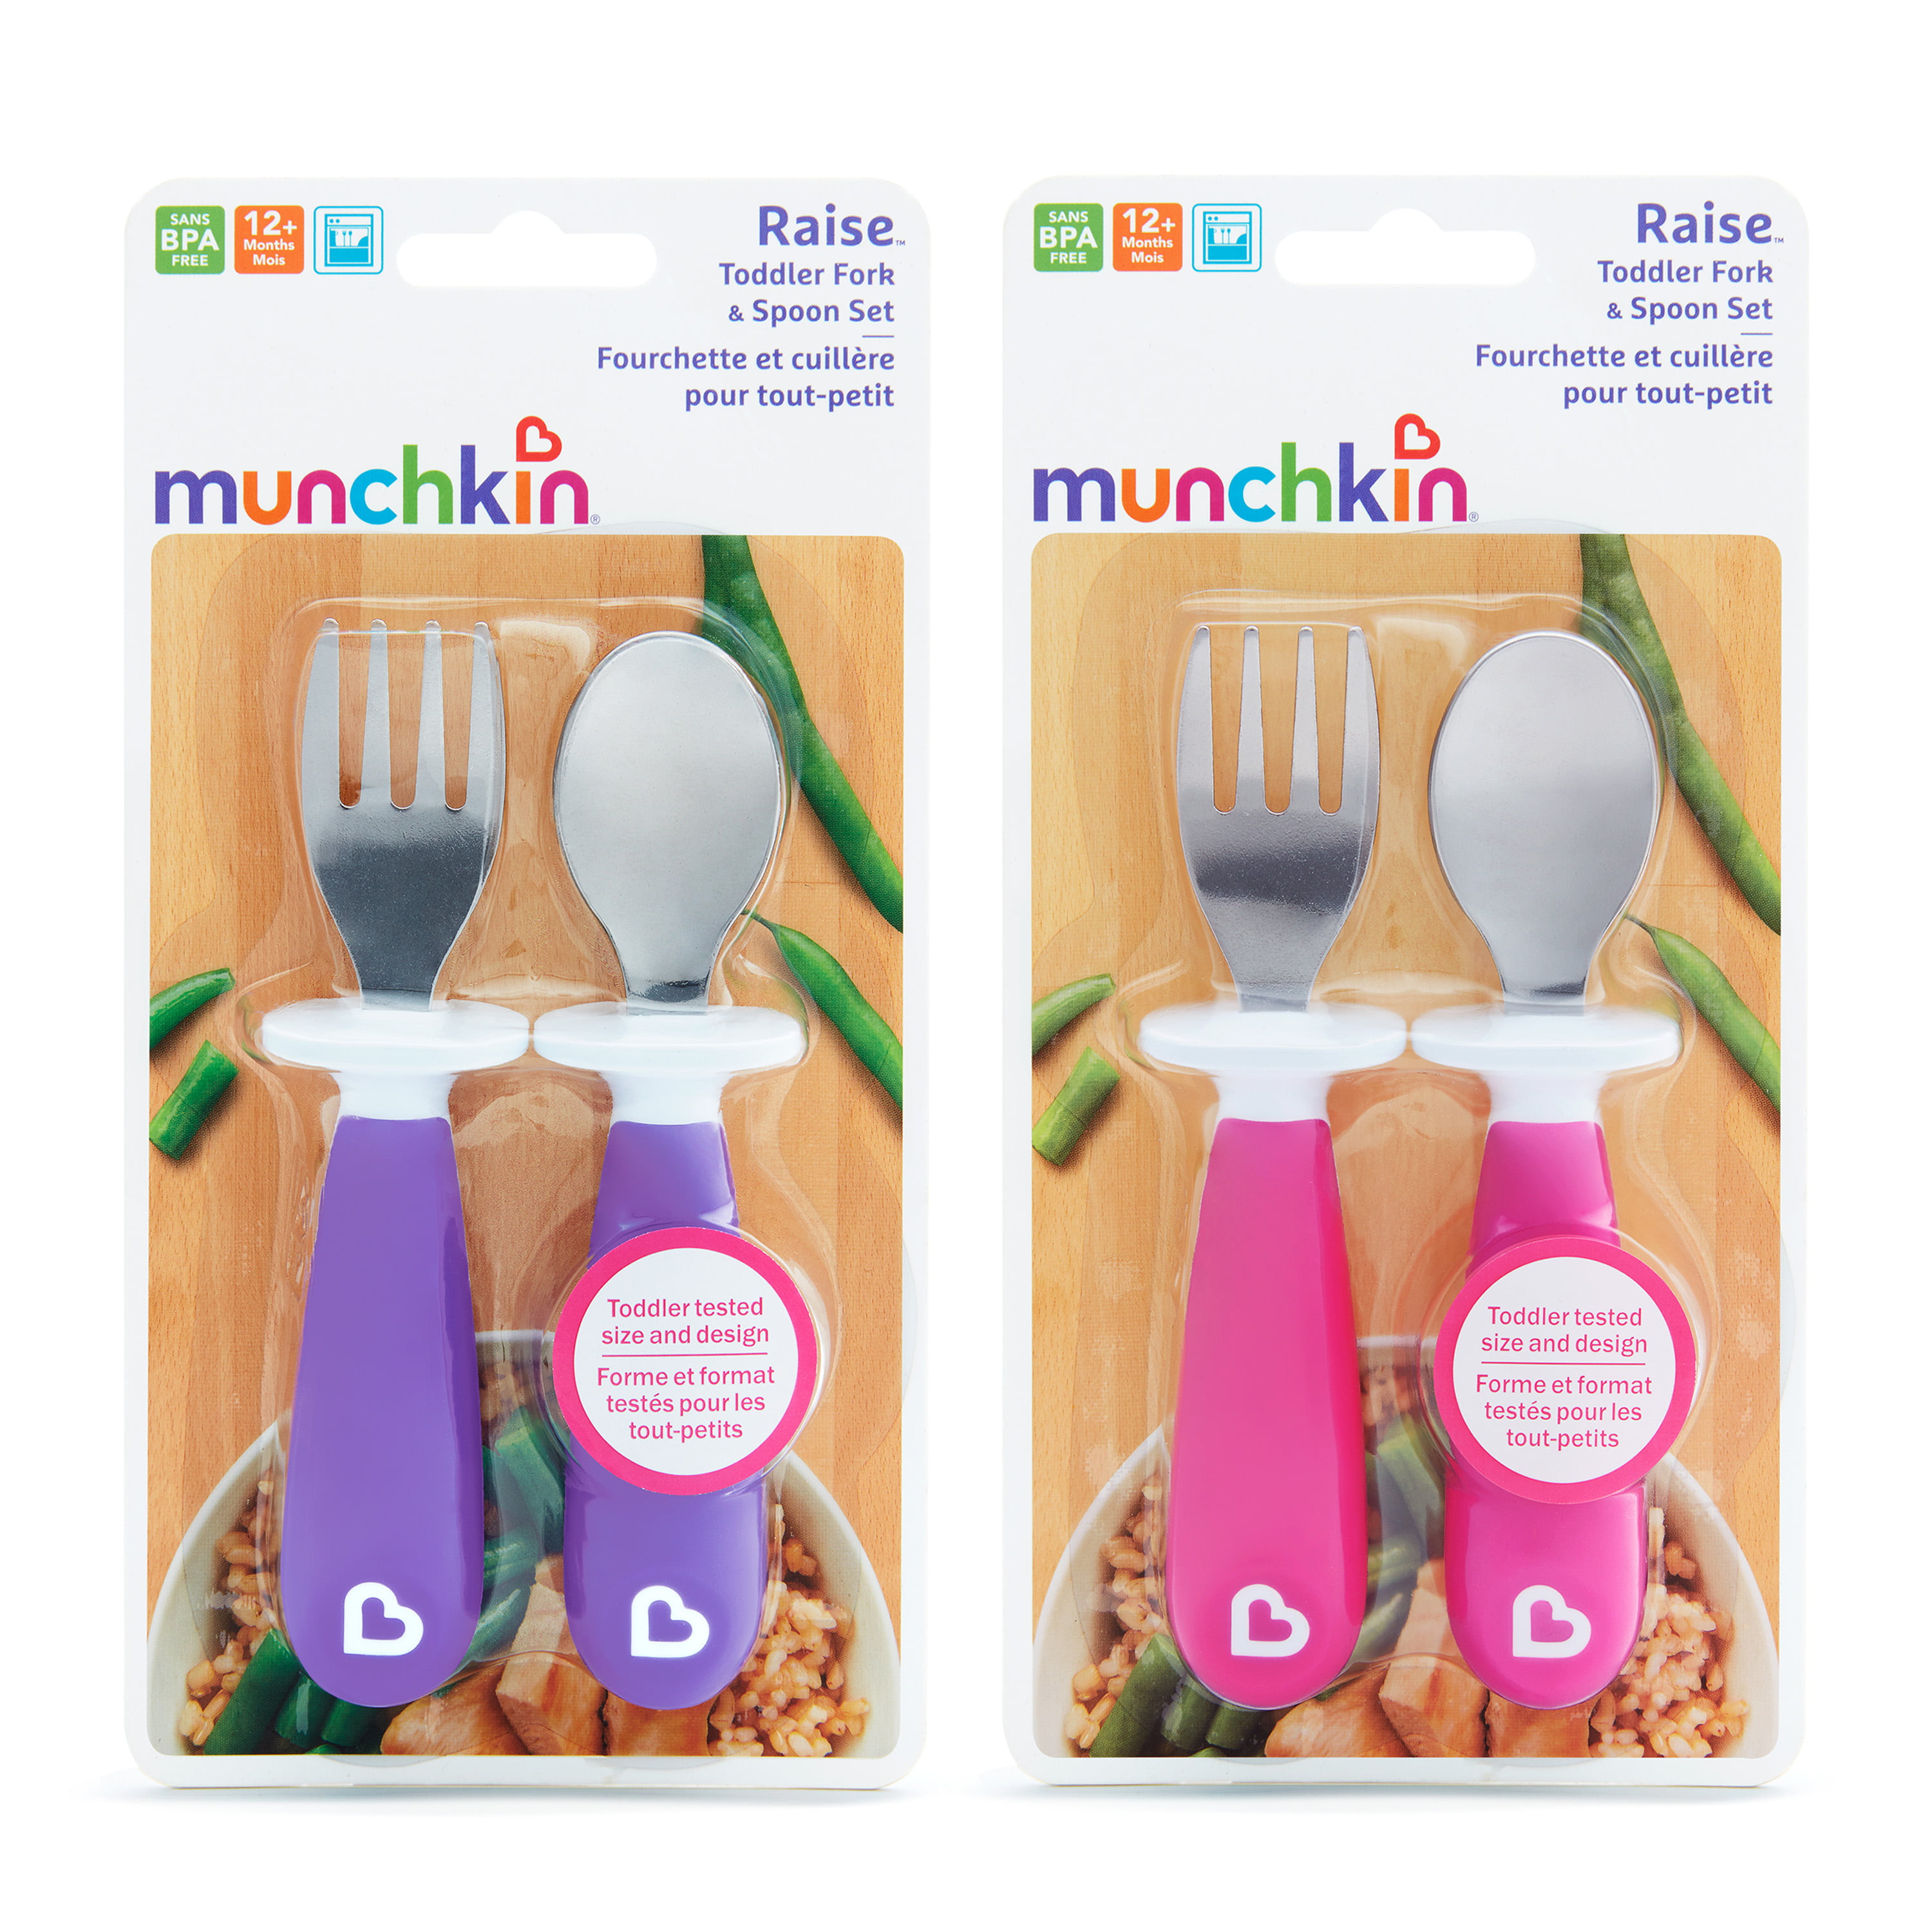 Pink Munchkin Raise Toddler Fork & Spoon Set